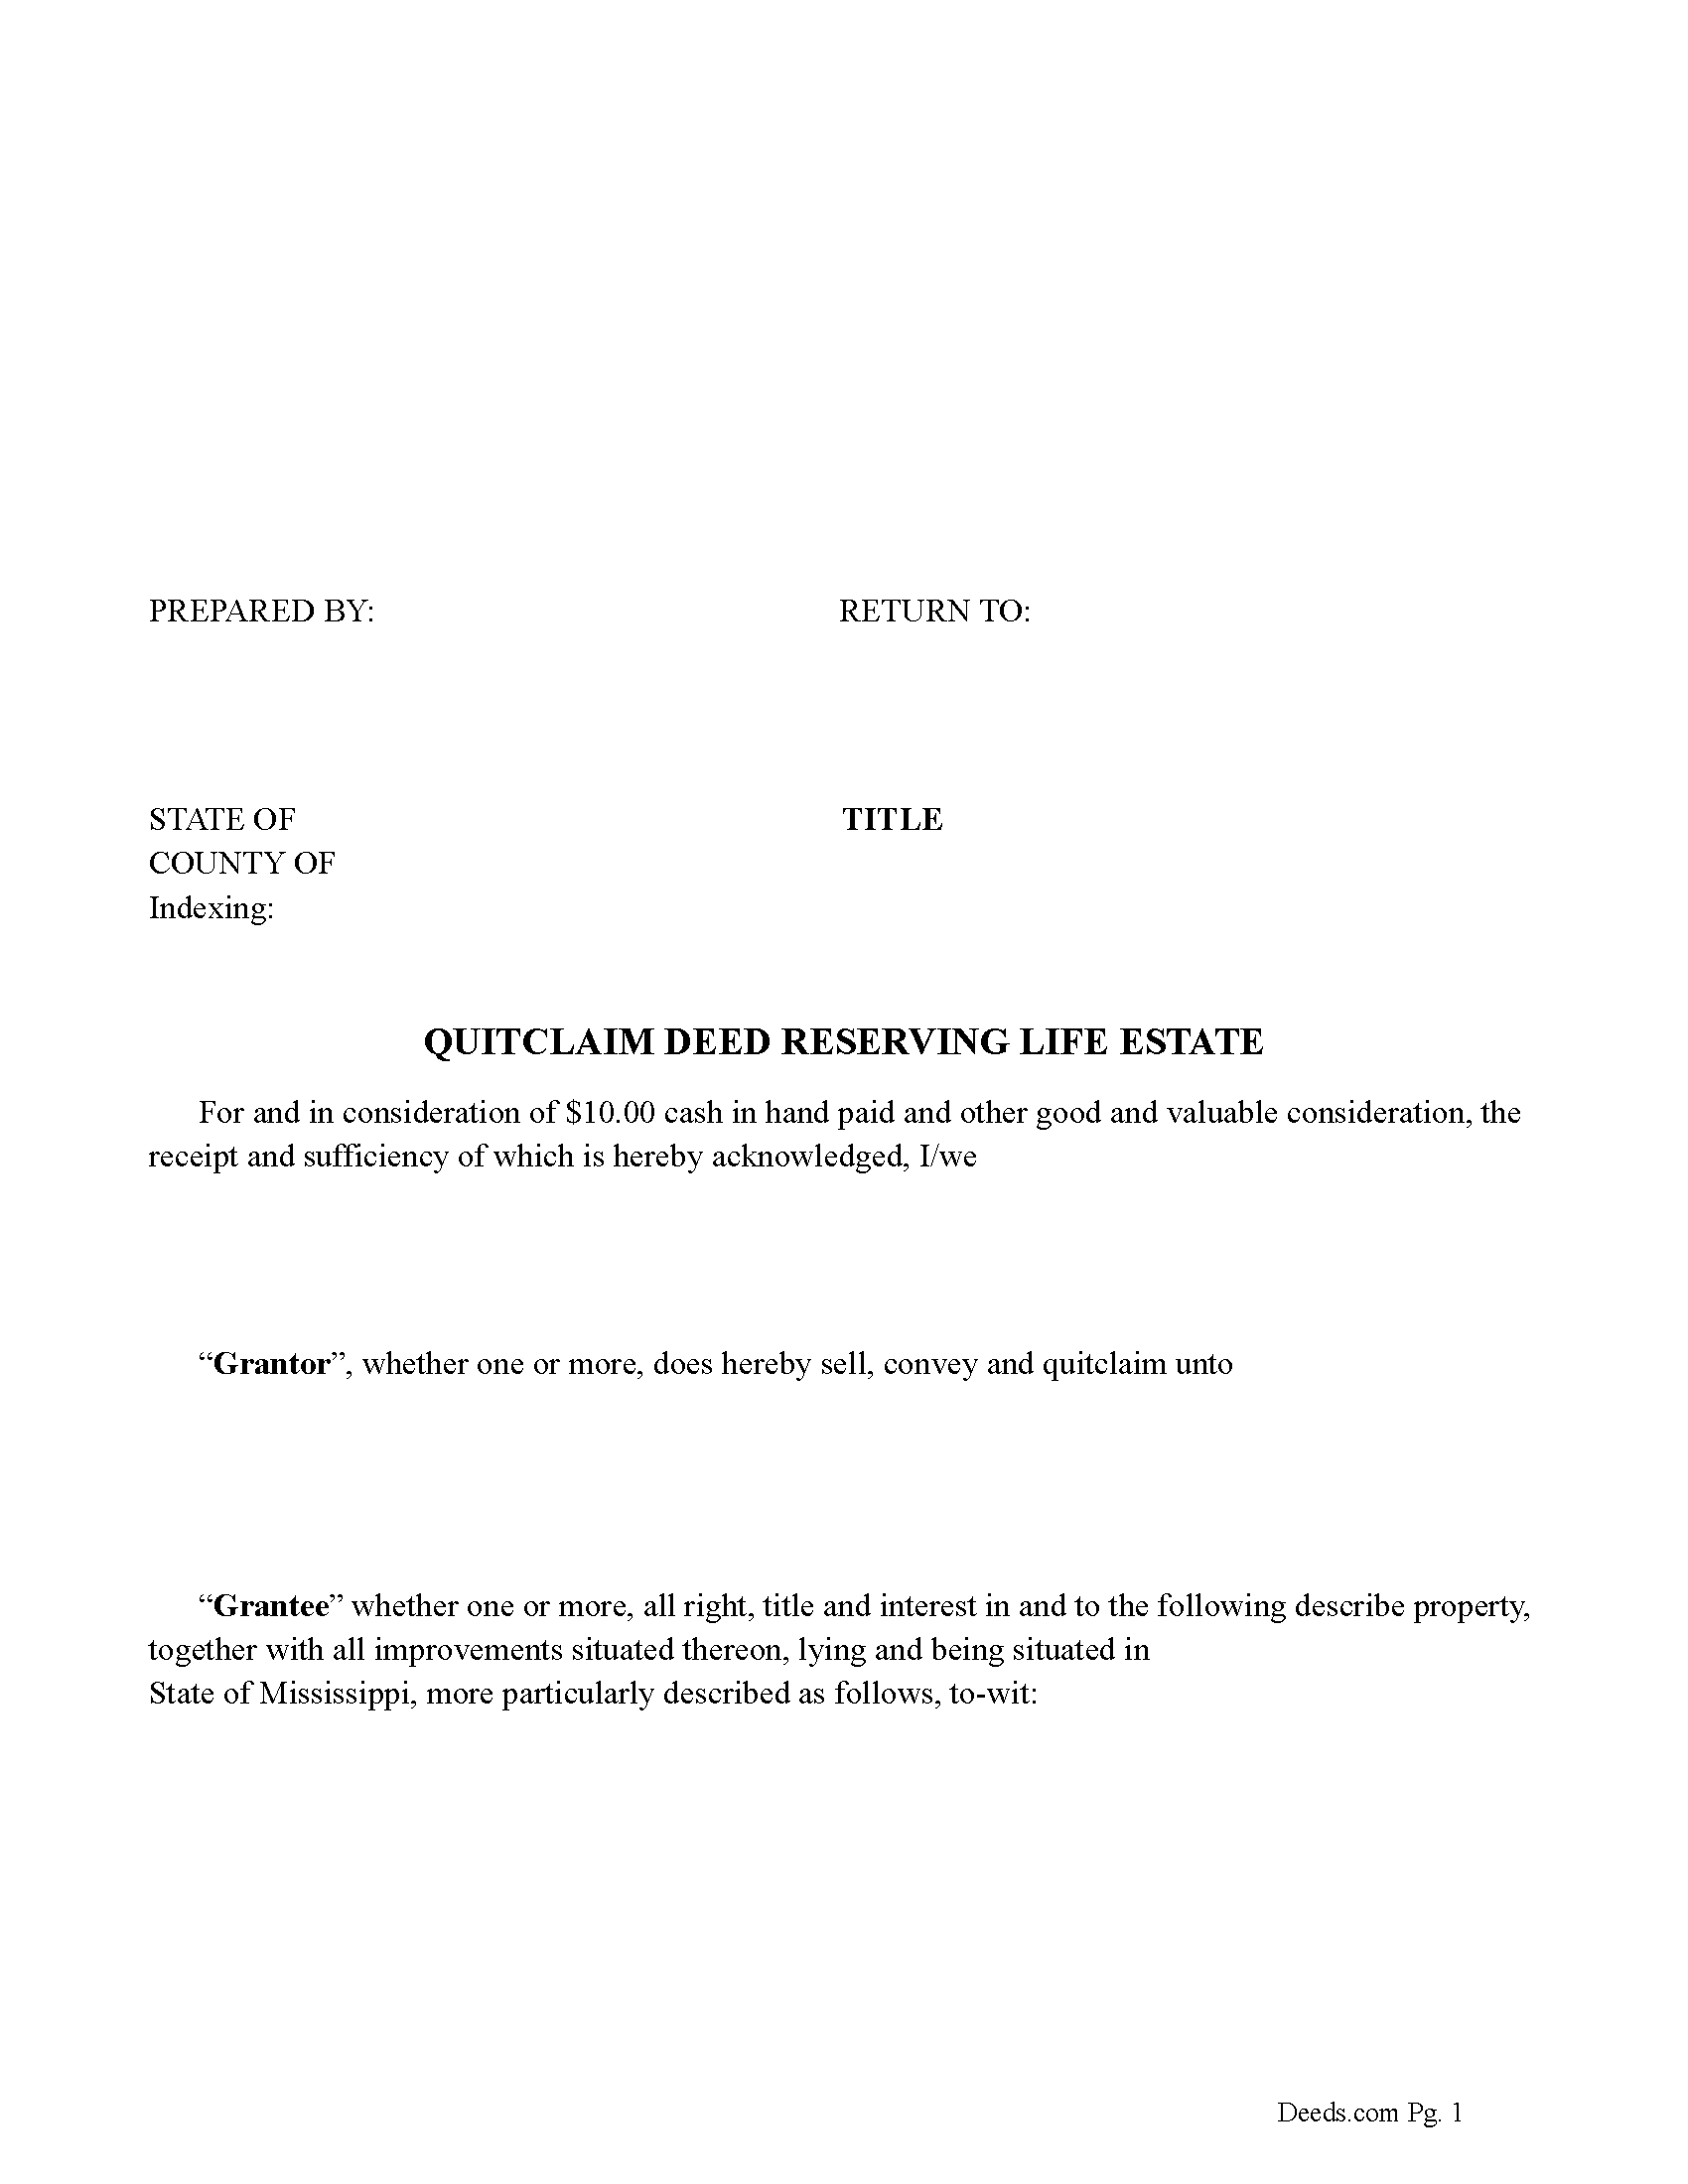 Quitclaim Deed Reserving Life Estate